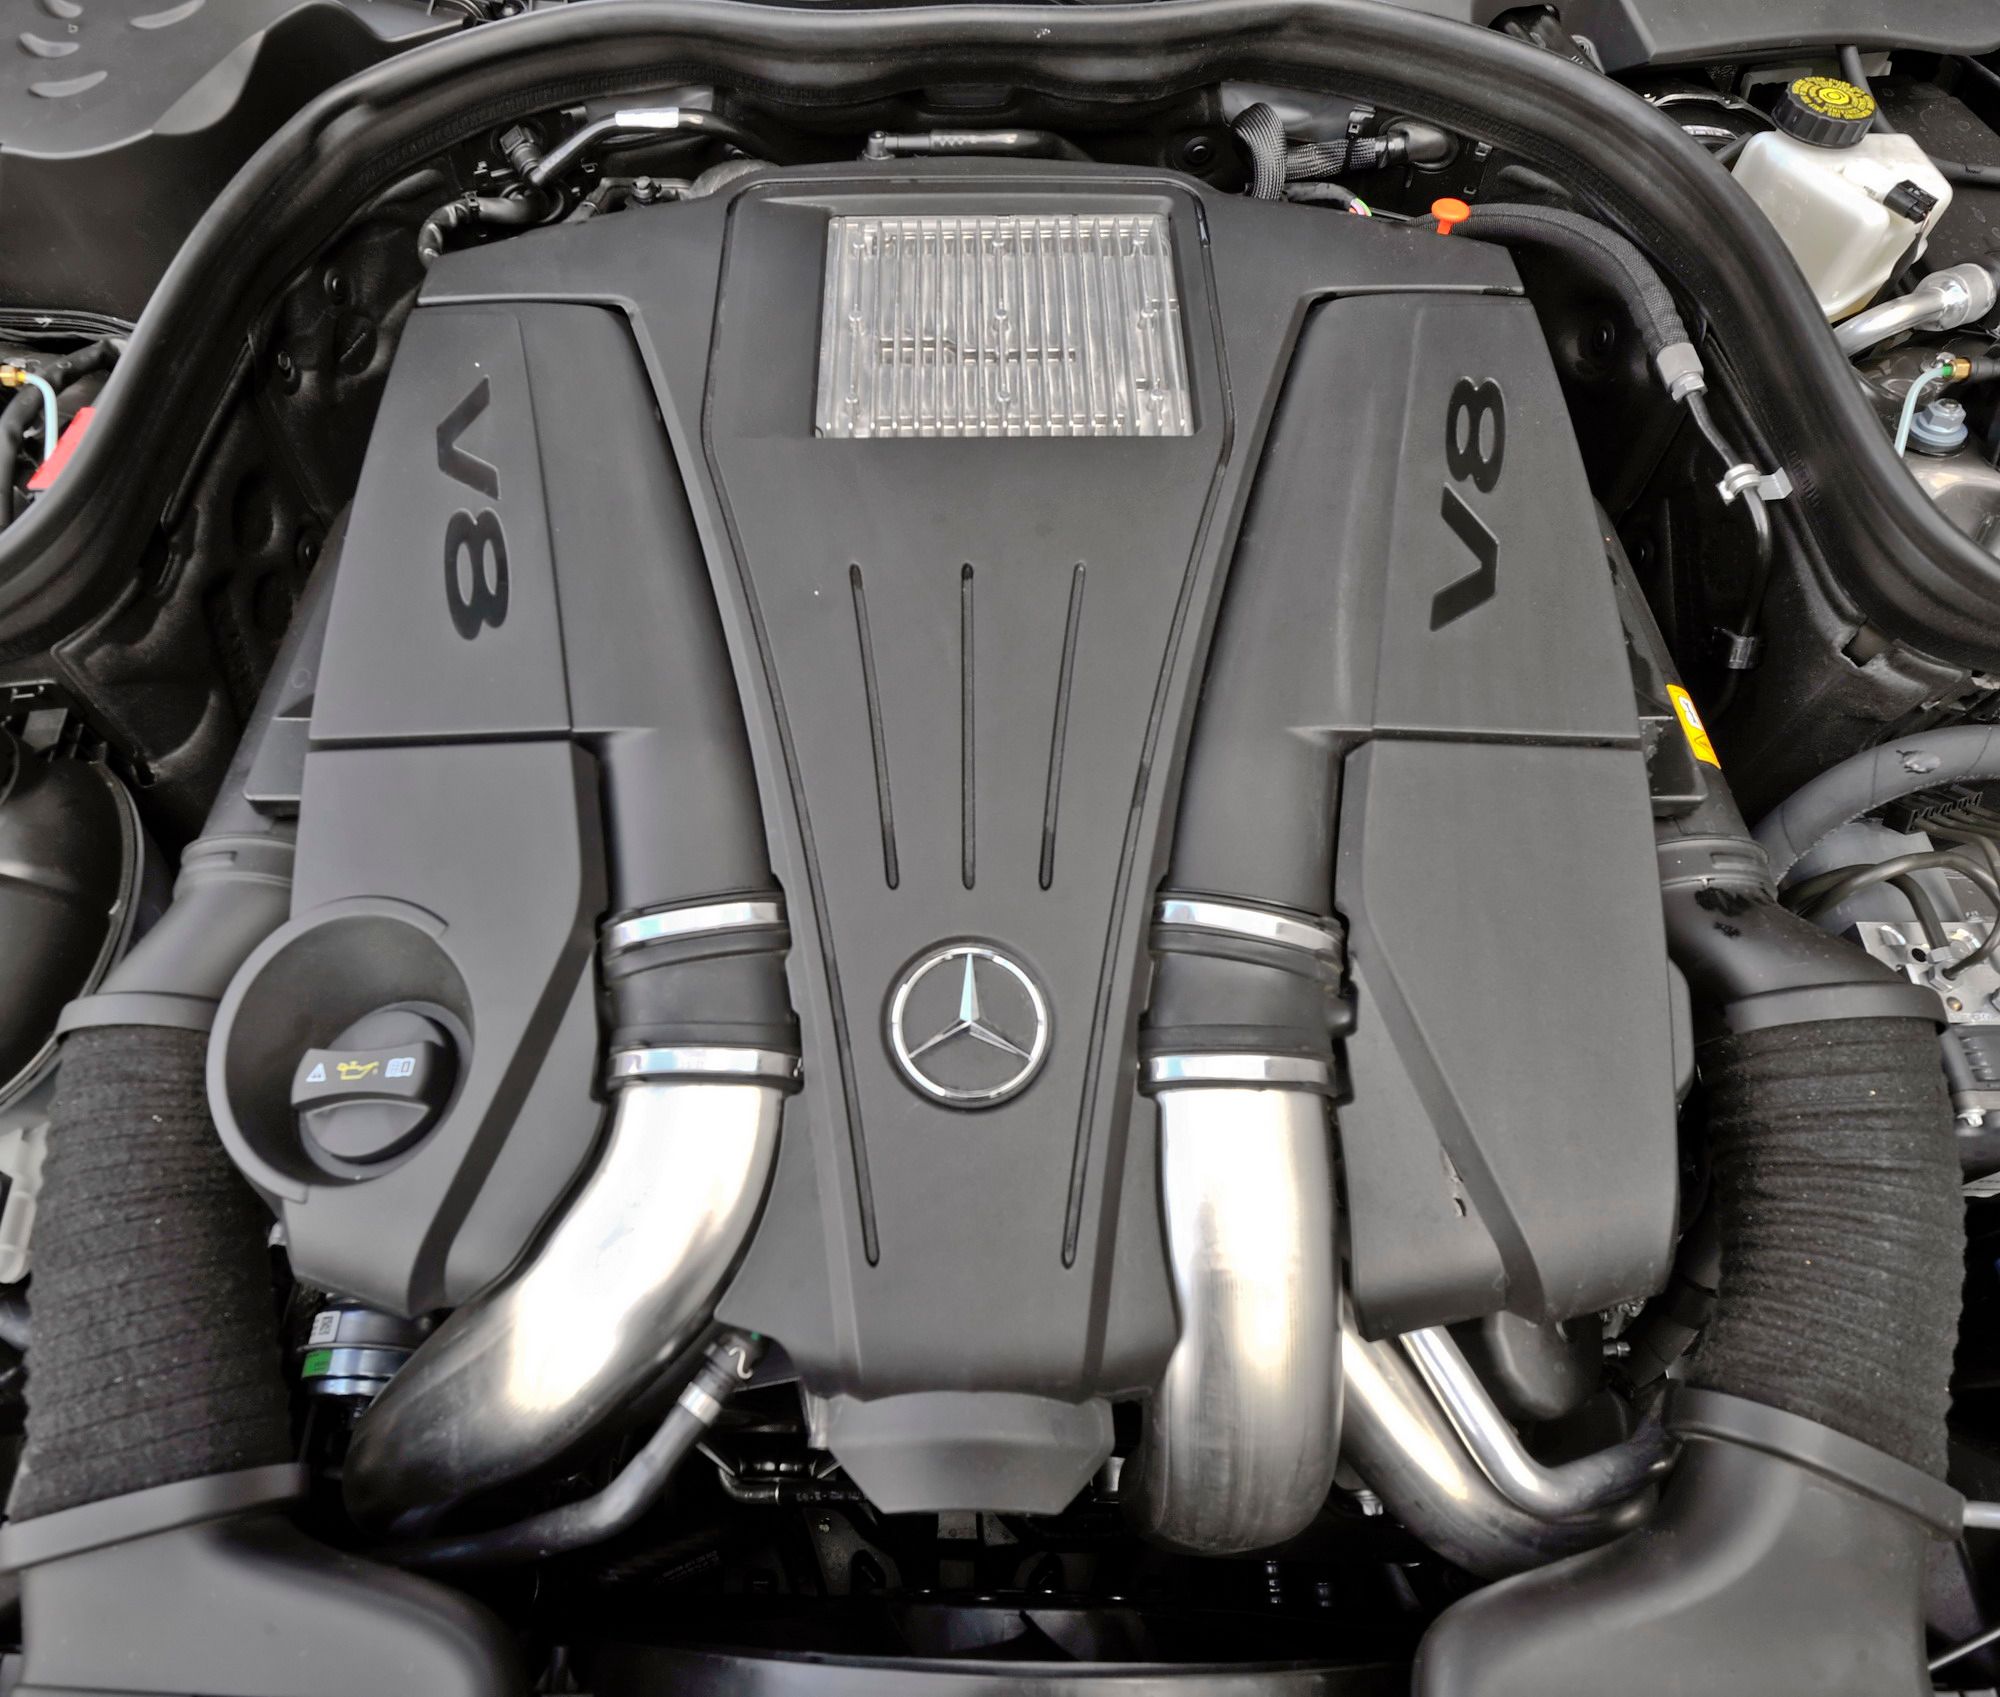 2012 - 2014 Mercedes-Benz CLS